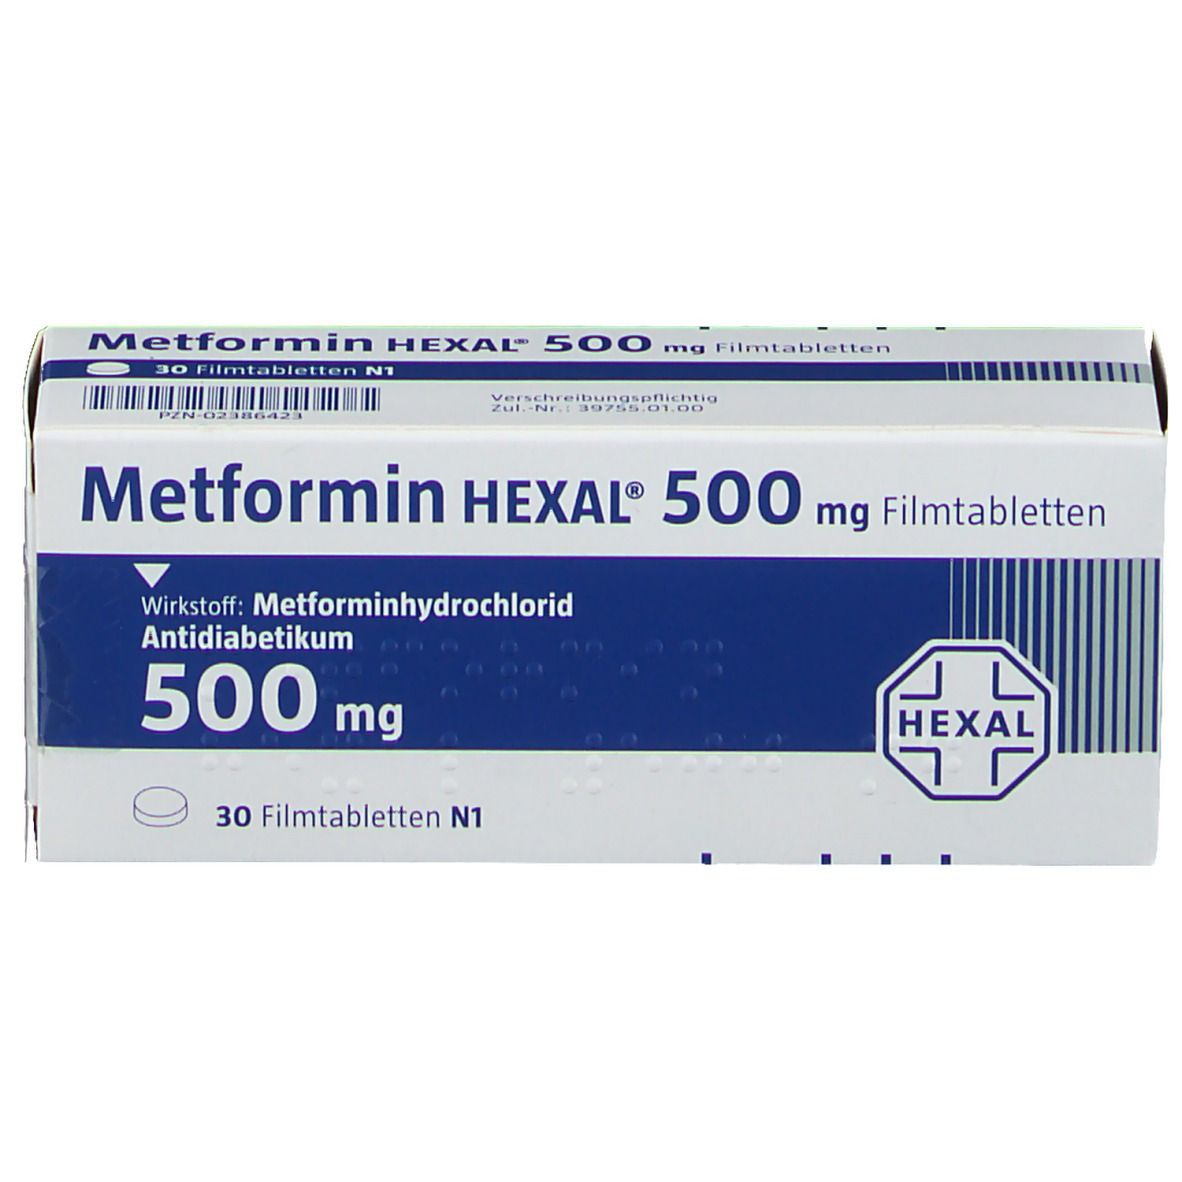 Metformin HEXAL® 500 mg